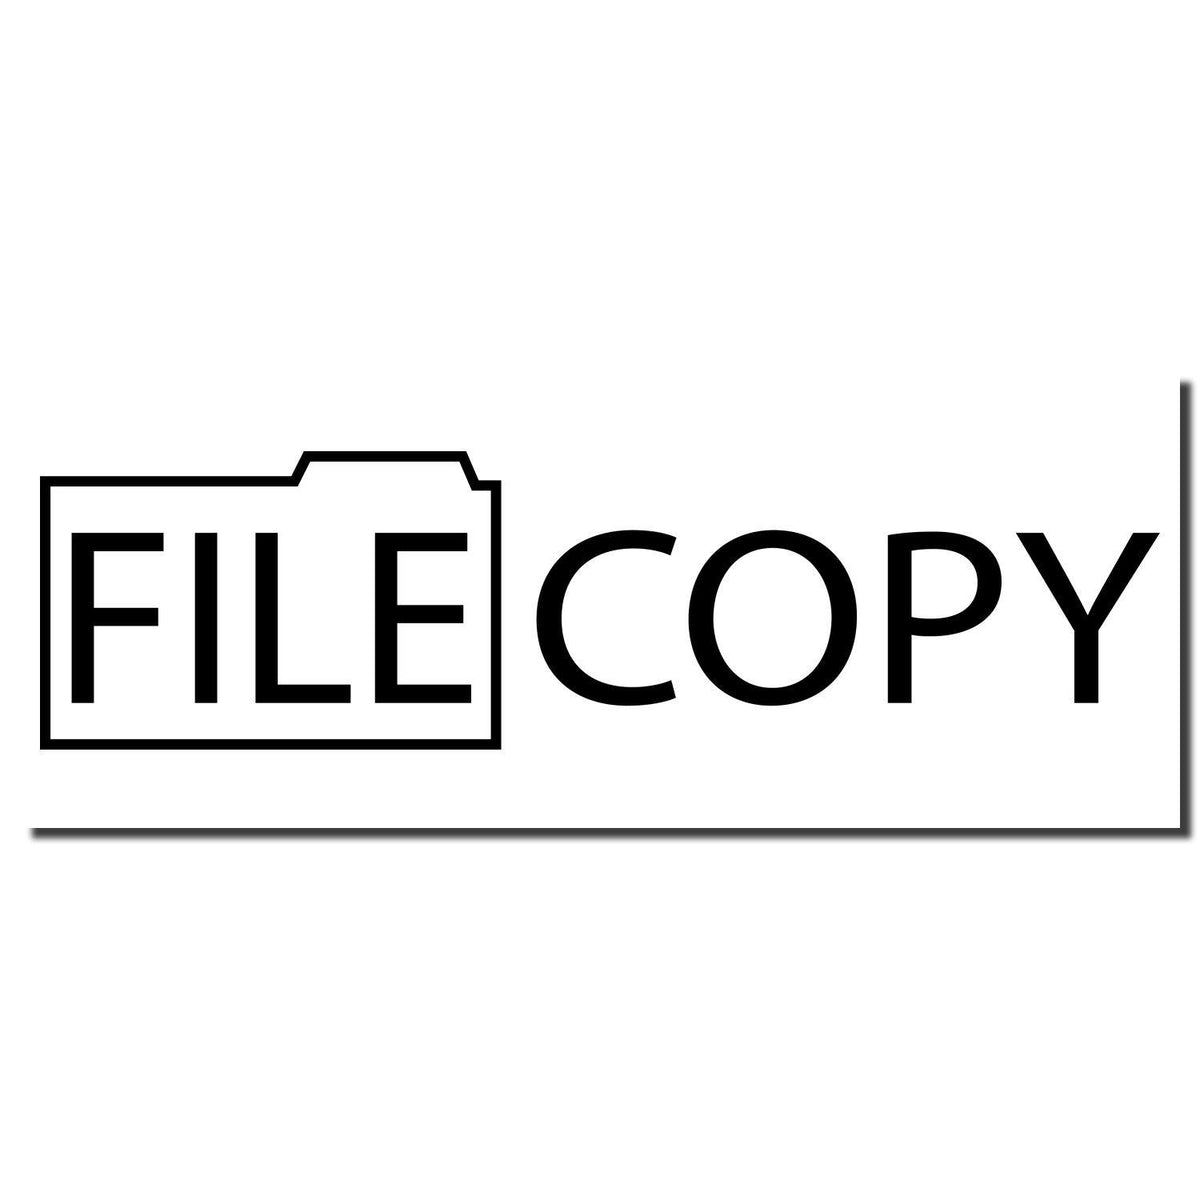 Enlarged Imprint Large Pre-Inked File Copy with Folder Stamp Sample